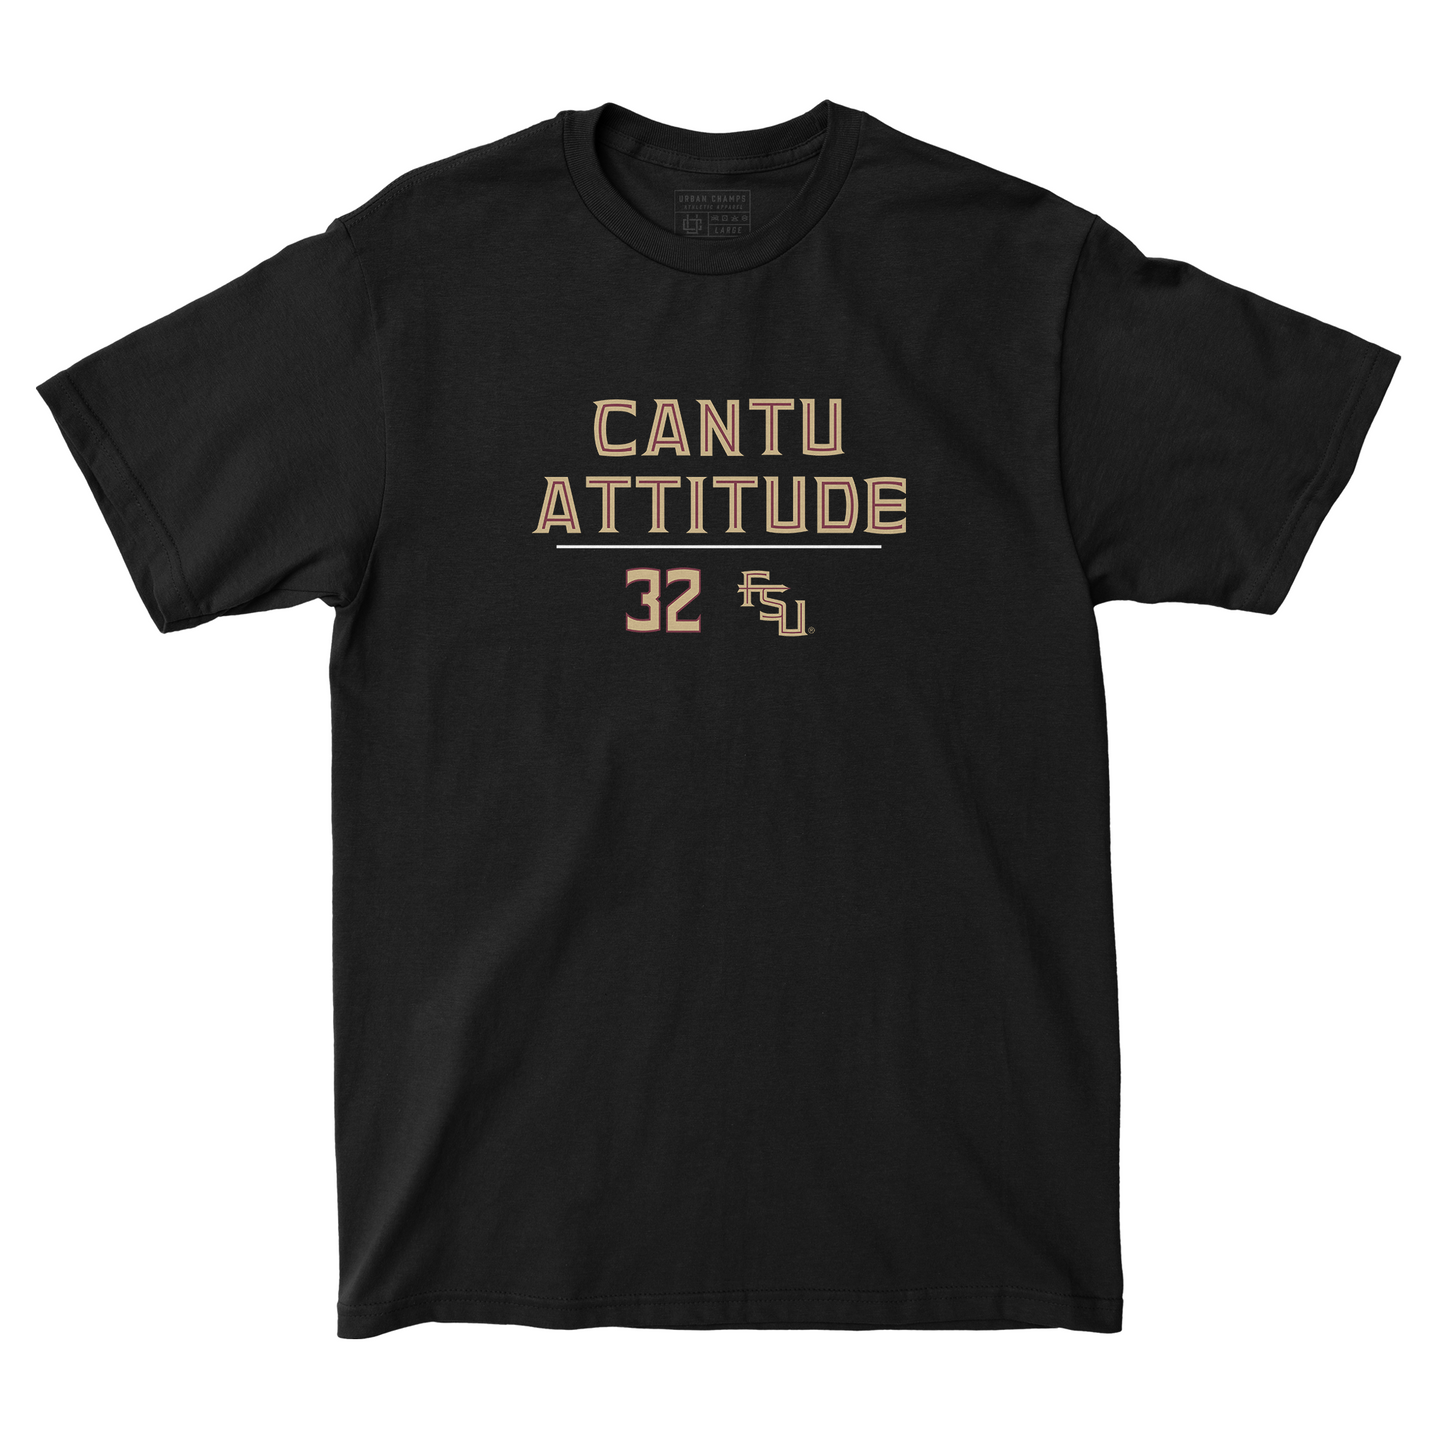 EXCLUSIVE RELEASE: Daniel Cantu "Cantu Attitude" Black Tee